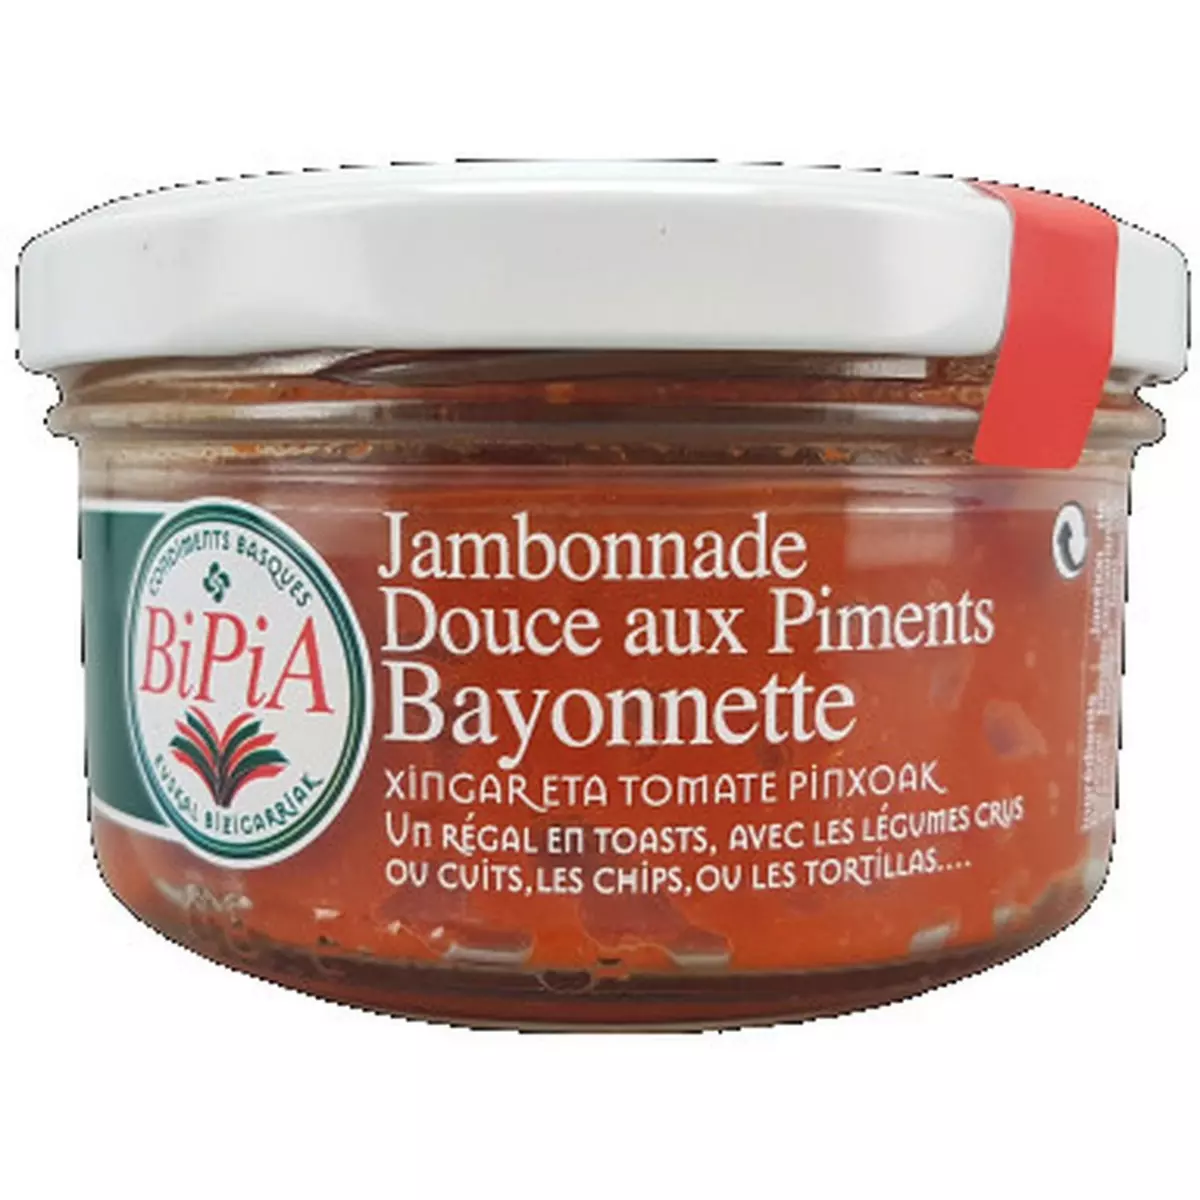 BIPIA Bayonnette Jambonnade douce aux piments 140g